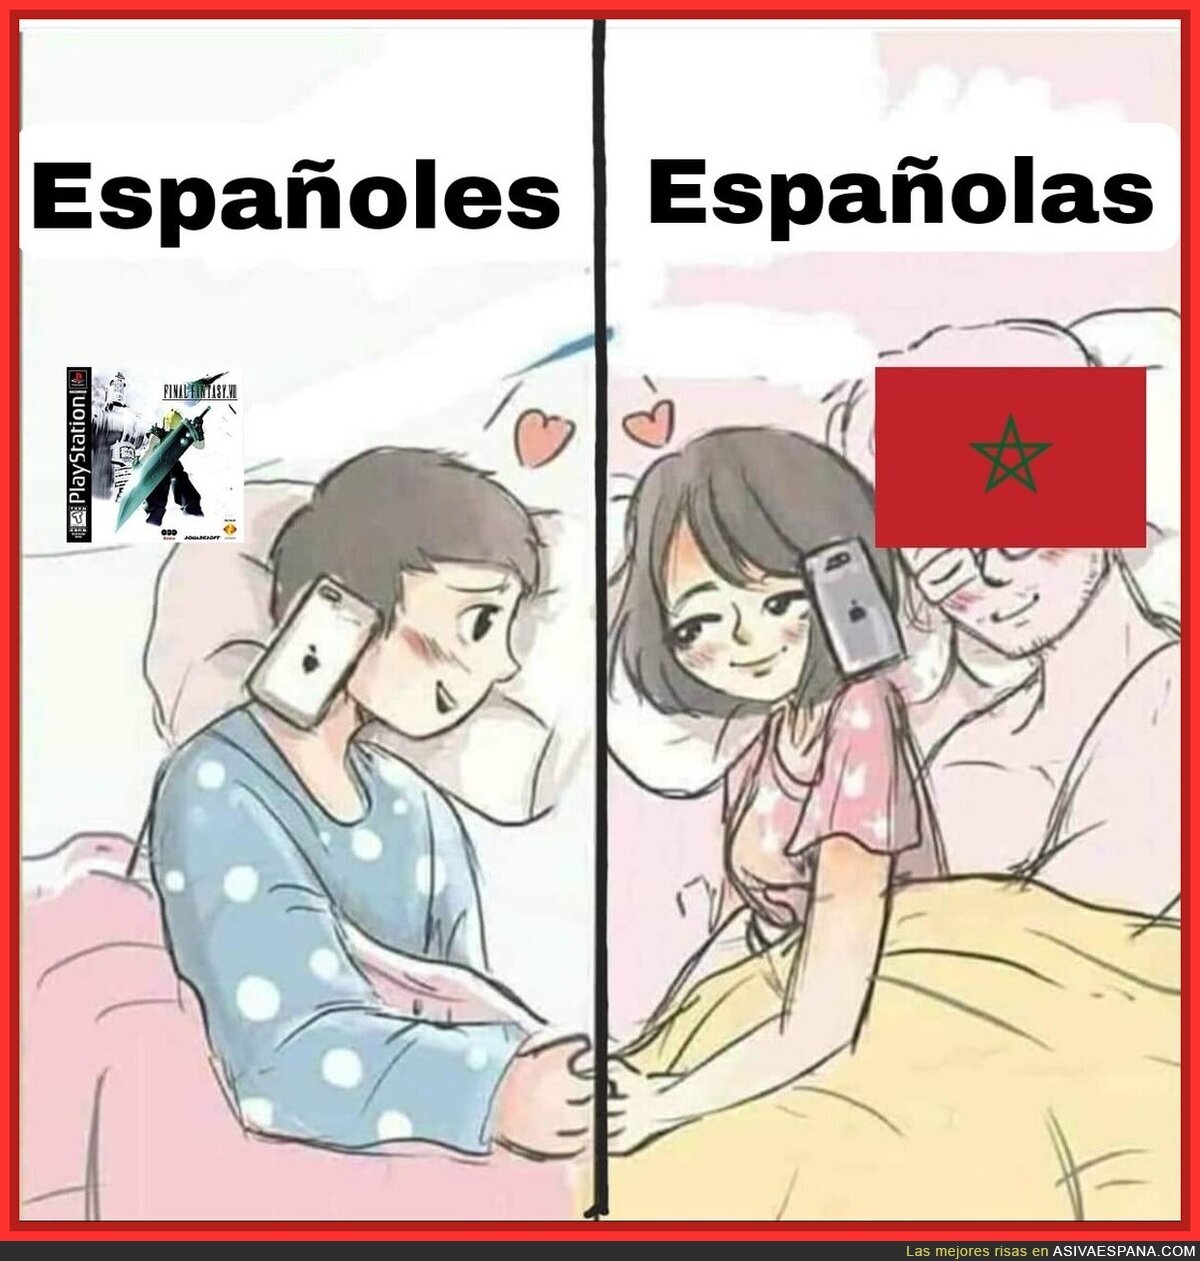 El problema de los españoles